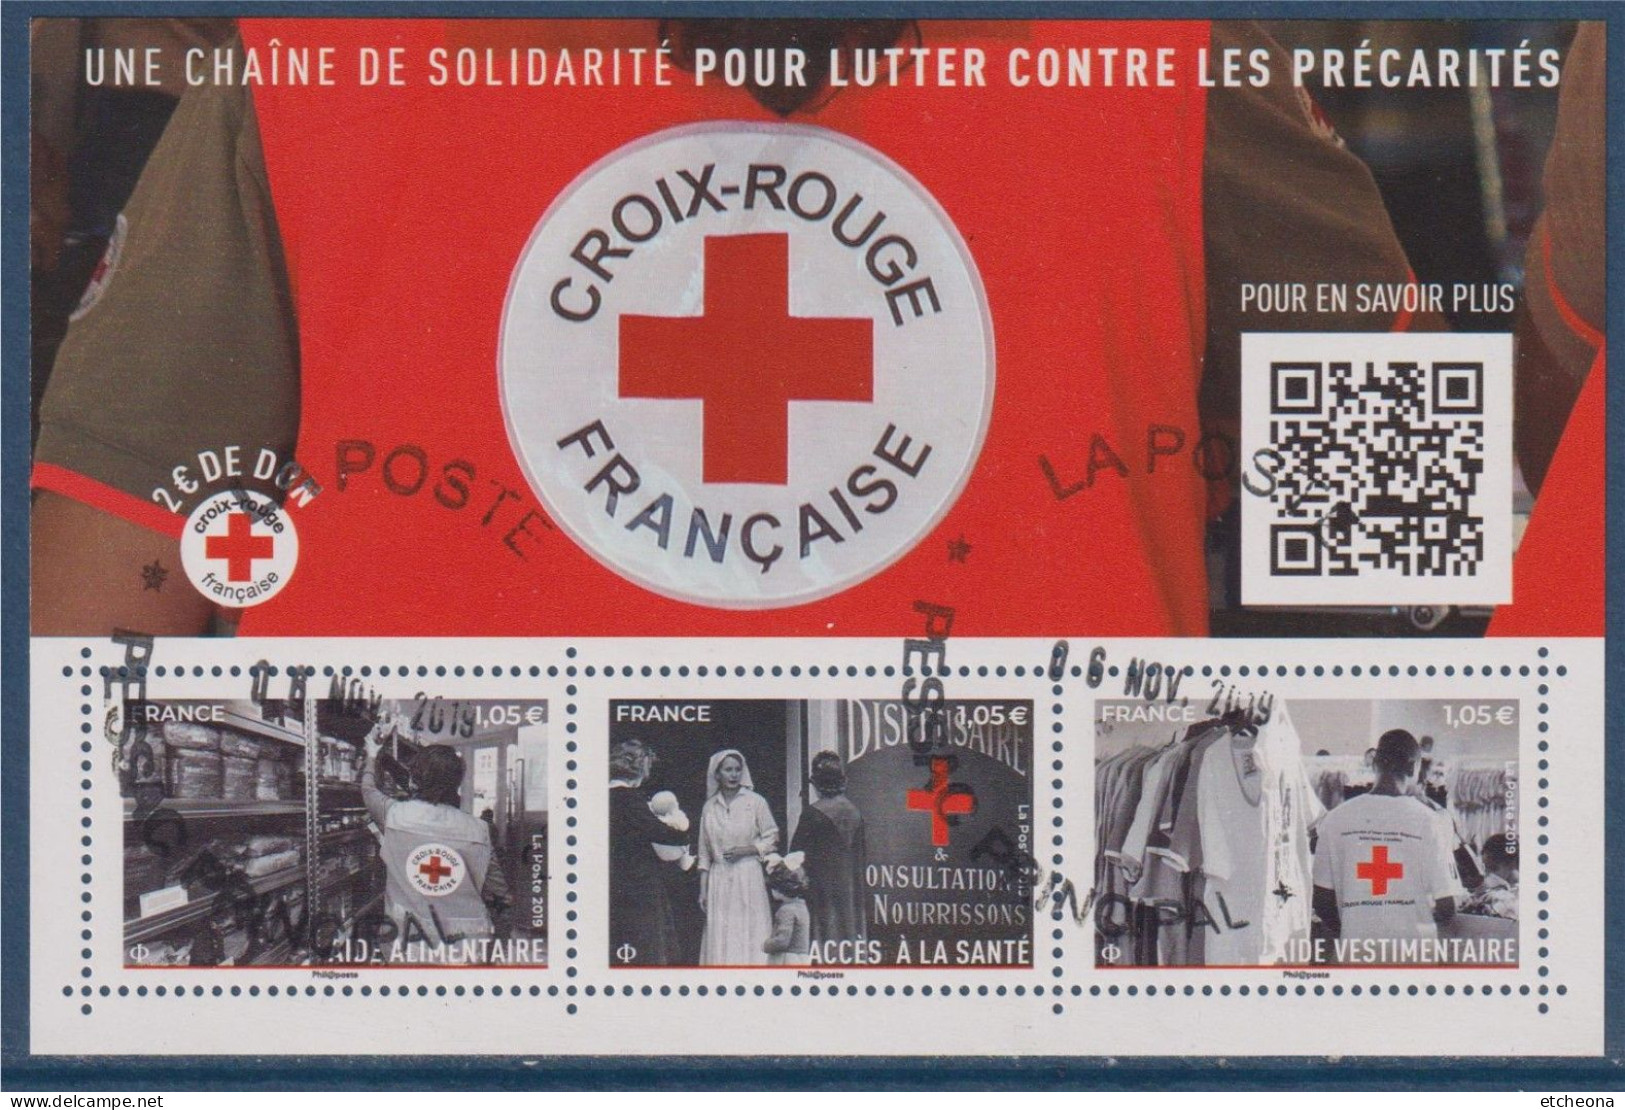 Croix Rouge 2019 Bloc Oblitéré F5350, Aide Alimentaire 5350, Vestimentaire 5352, Et Accès à La Santé 5351 - Croce Rossa